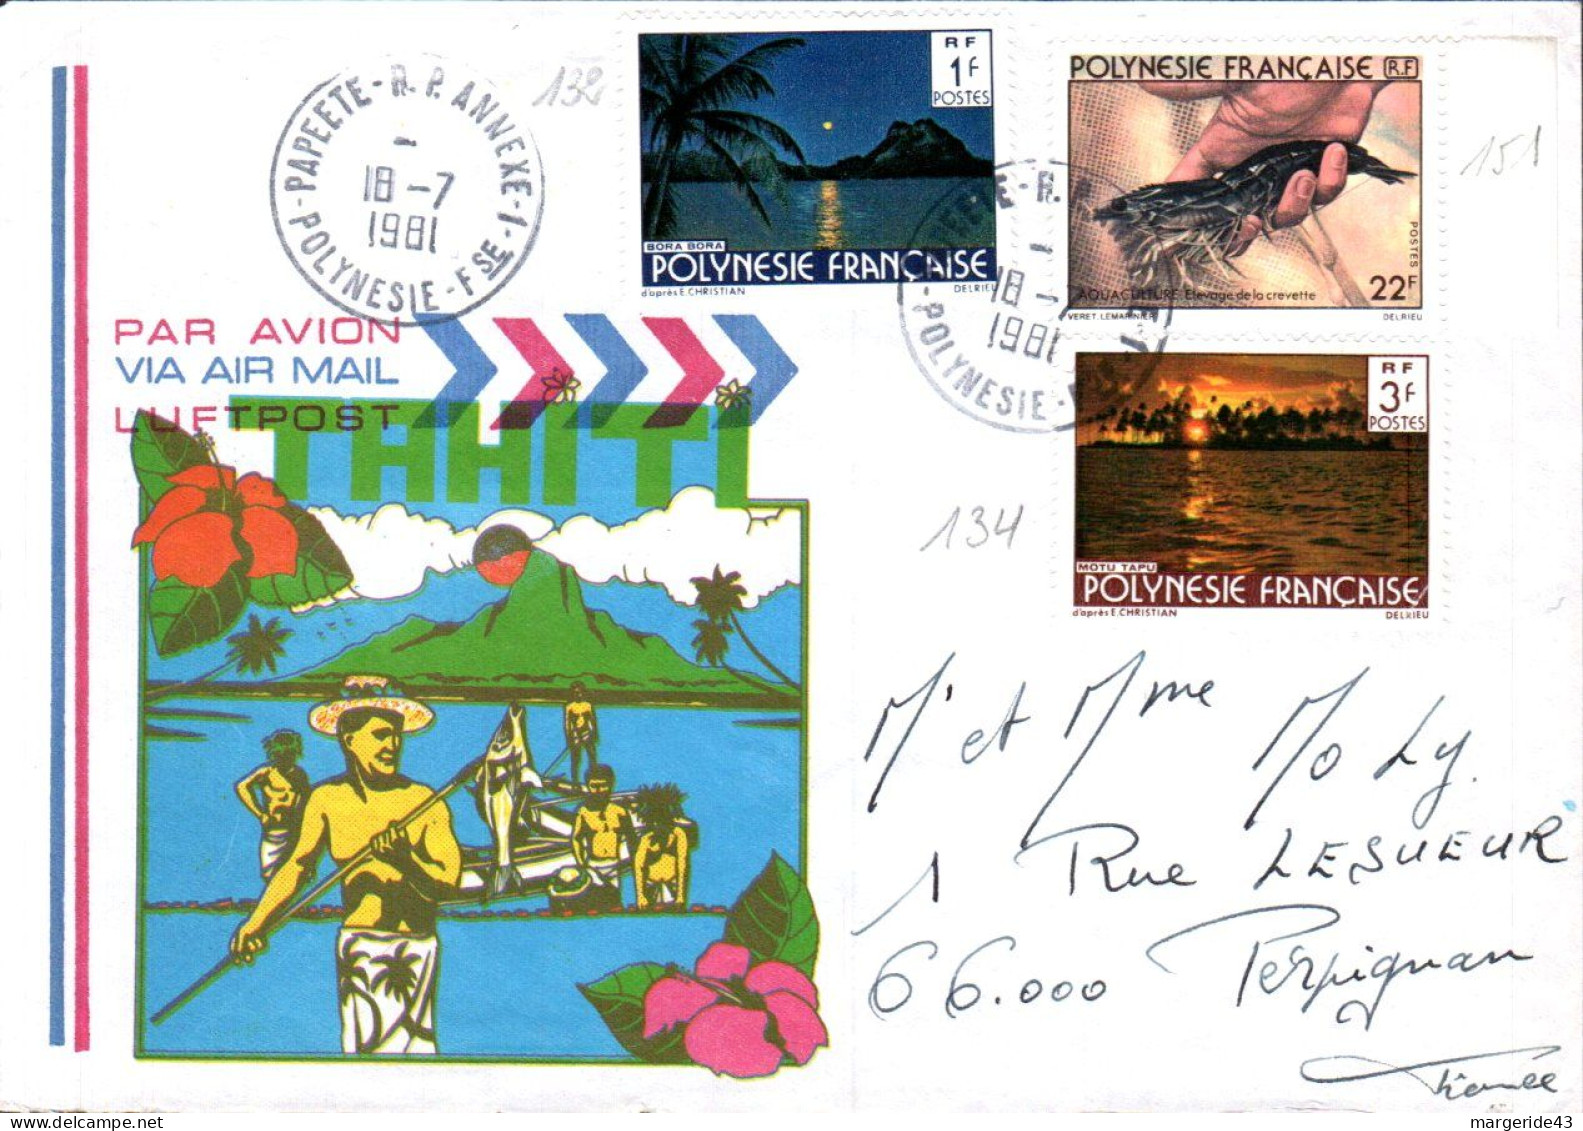 POLYNESIE AFFRANCHISSEMENT COMPOSE SUR LETTRE POUR LA FRANCE 1981 - Covers & Documents